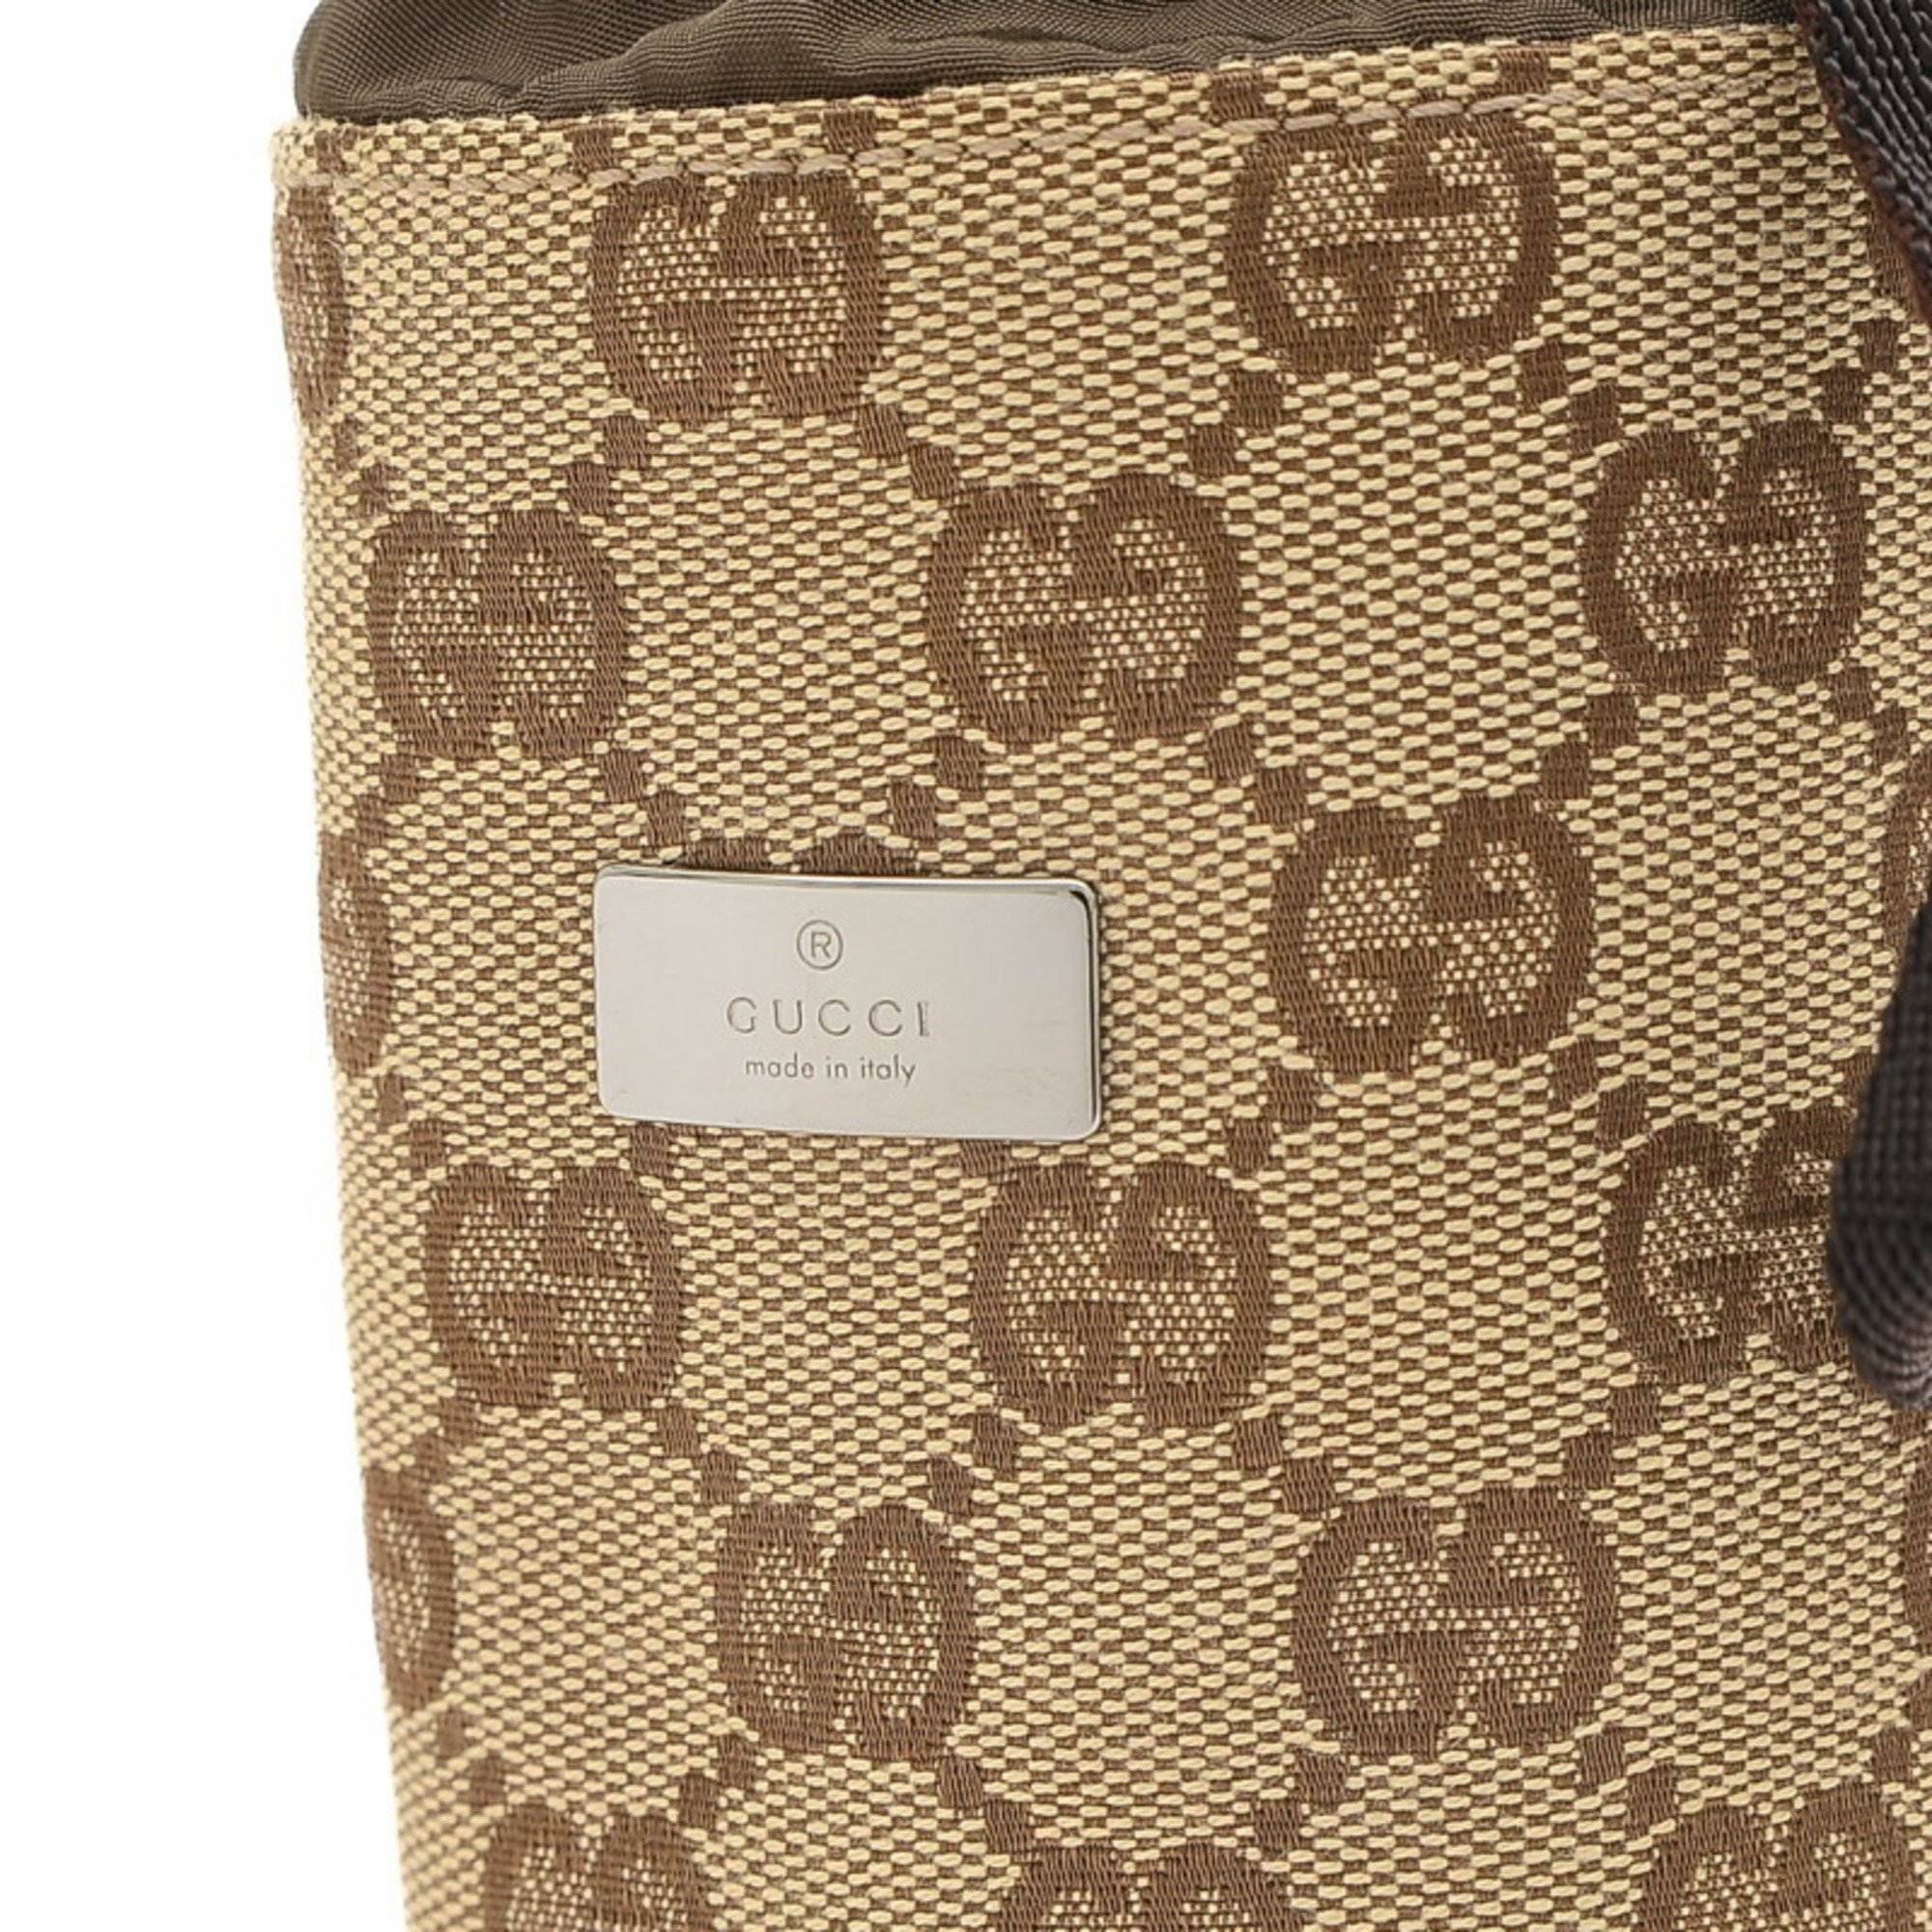 Gucci GG pattern bottle holder in beige canvas 28691